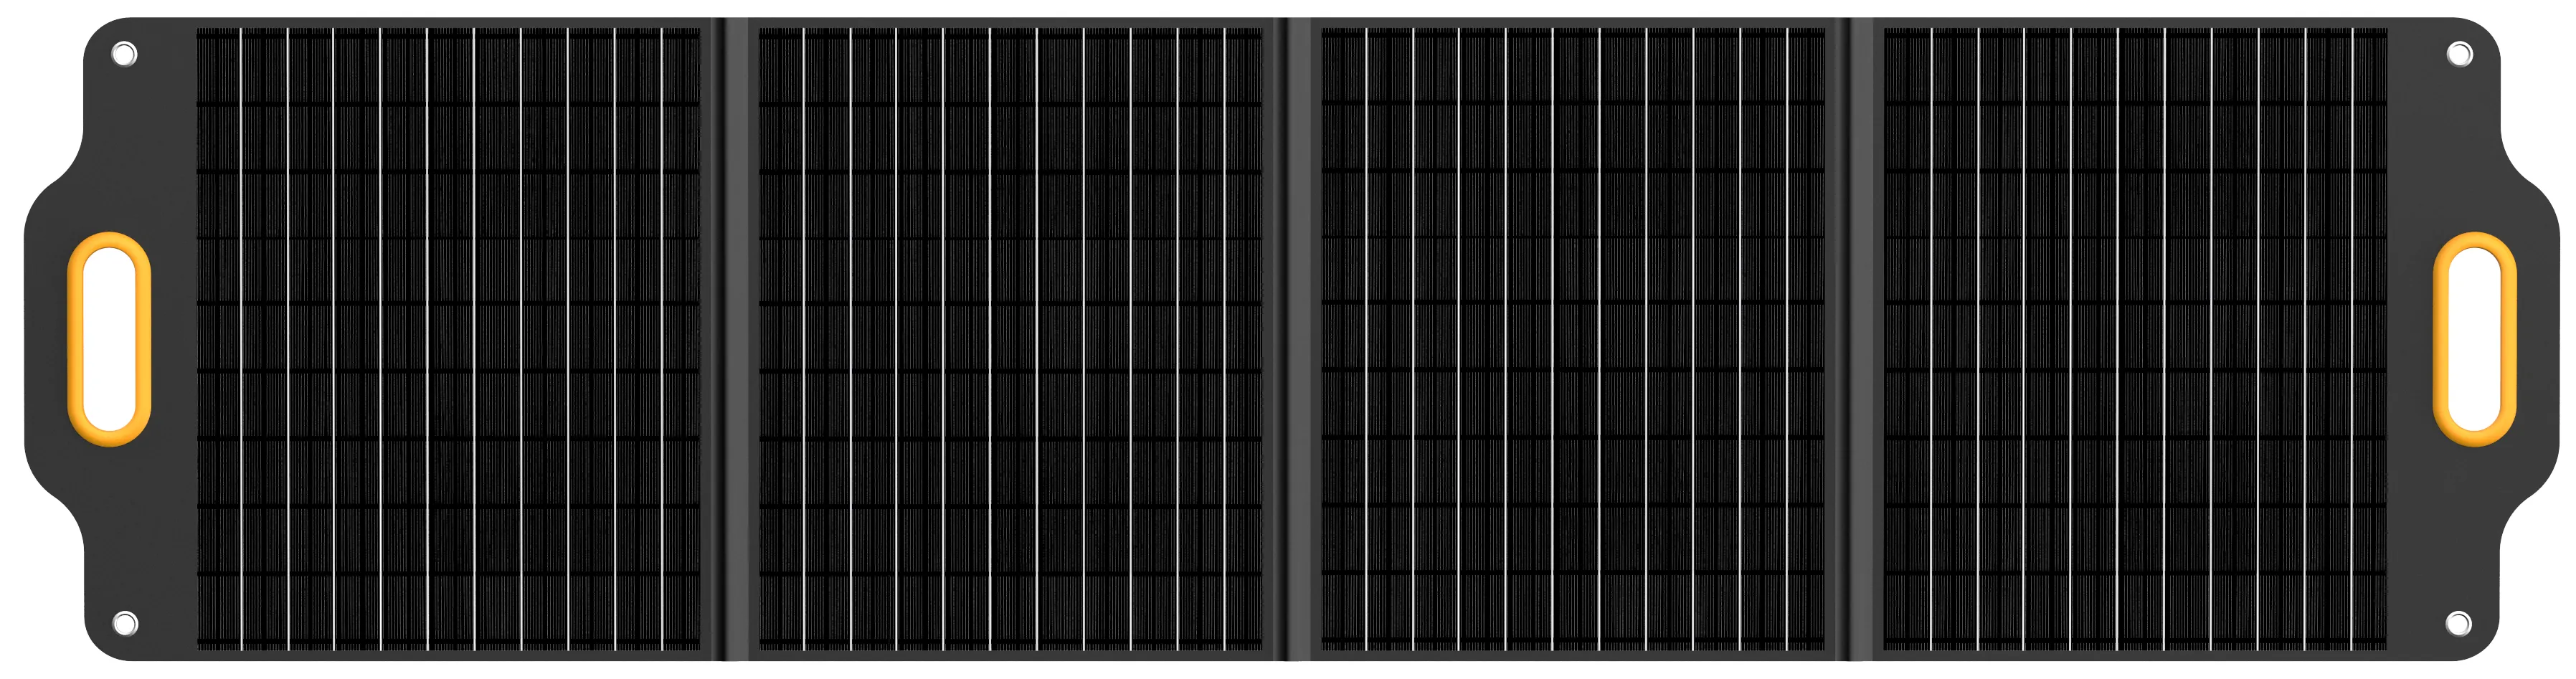 Портативная солнечная панель Powerness Solar X120 Panel цена 9999.00 грн - фотография 2